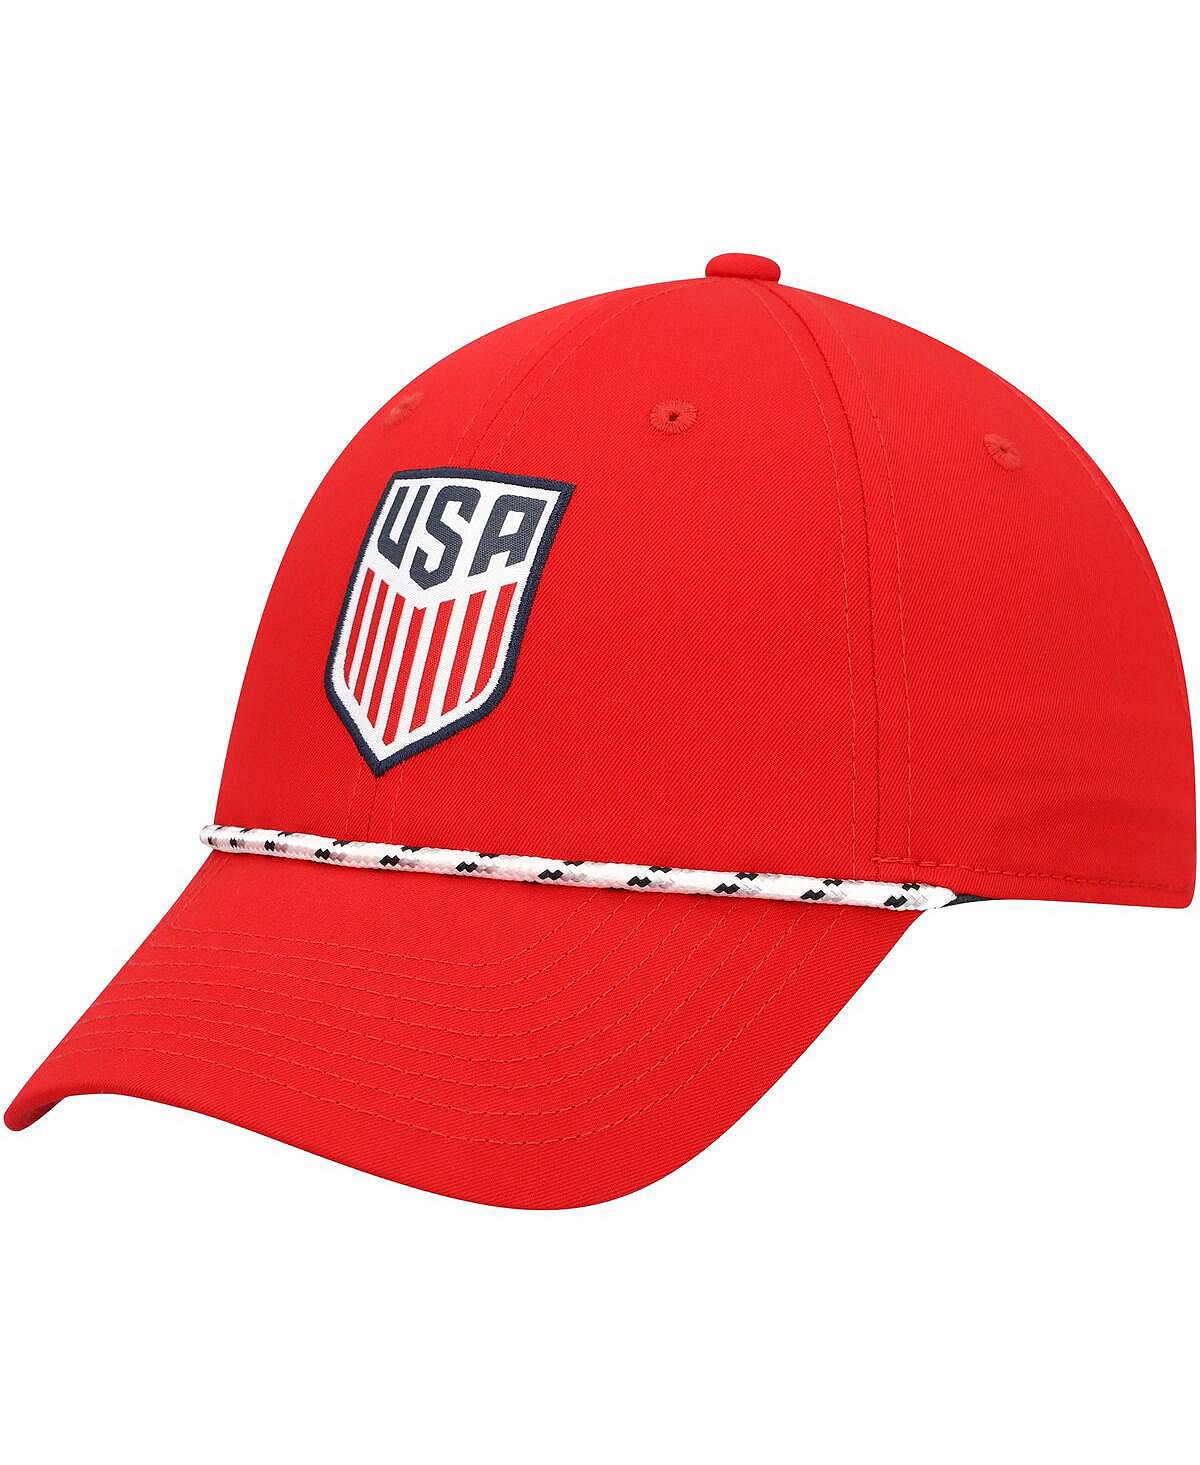 Мужская красная регулируемая кепка для гольфа USMNT Legacy91 Nike